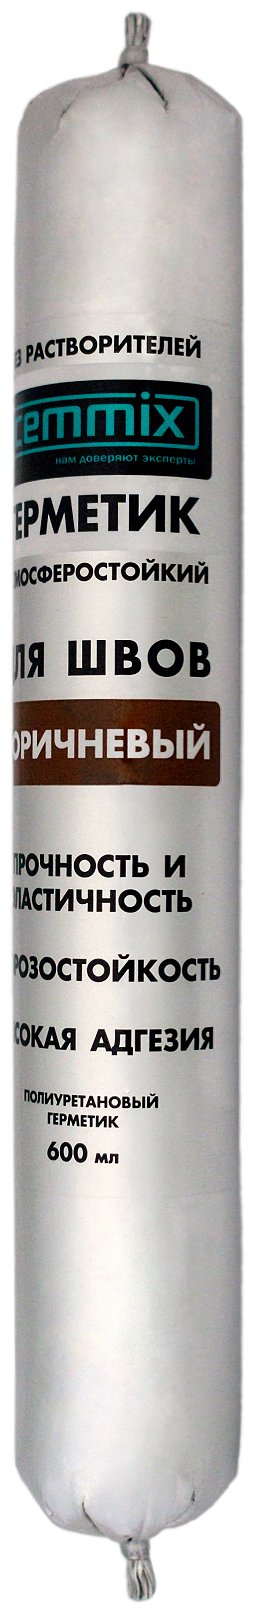 Клей-герметик для швов полиуретановый универсальный Cemmix коричневый 600 мл.